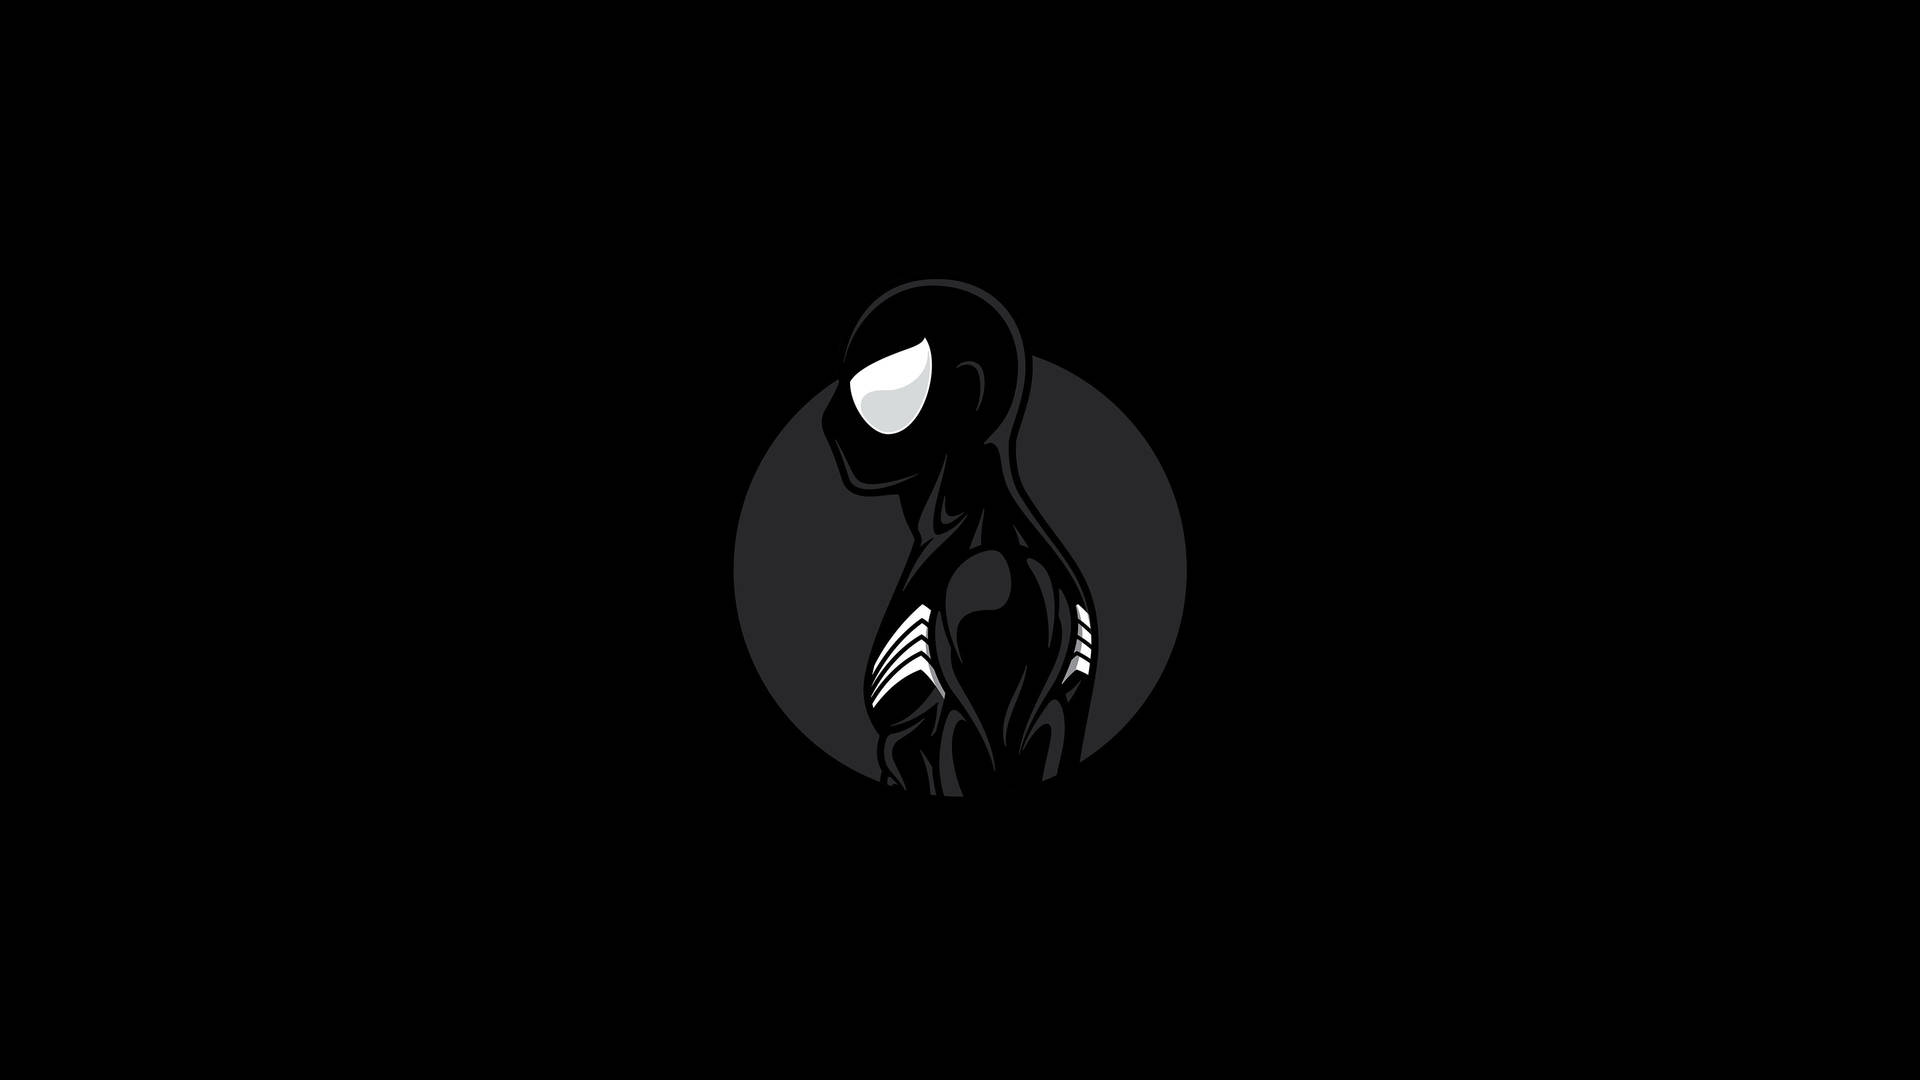 Dark Minimalist Spider Man Background